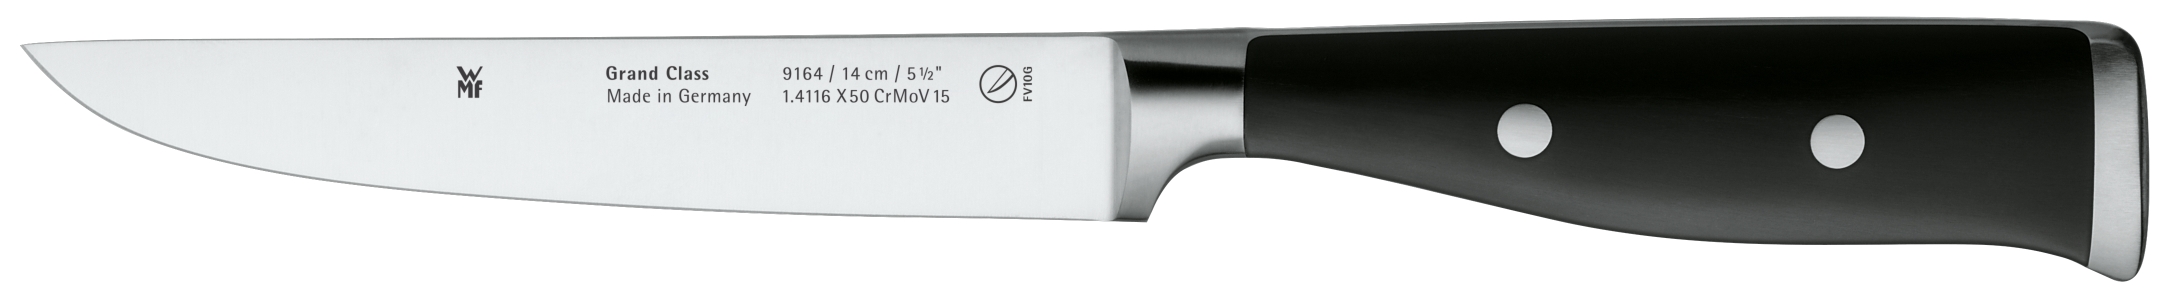 Универсальный нож Grand Class 14 см универсальный рассухариватель автоdело